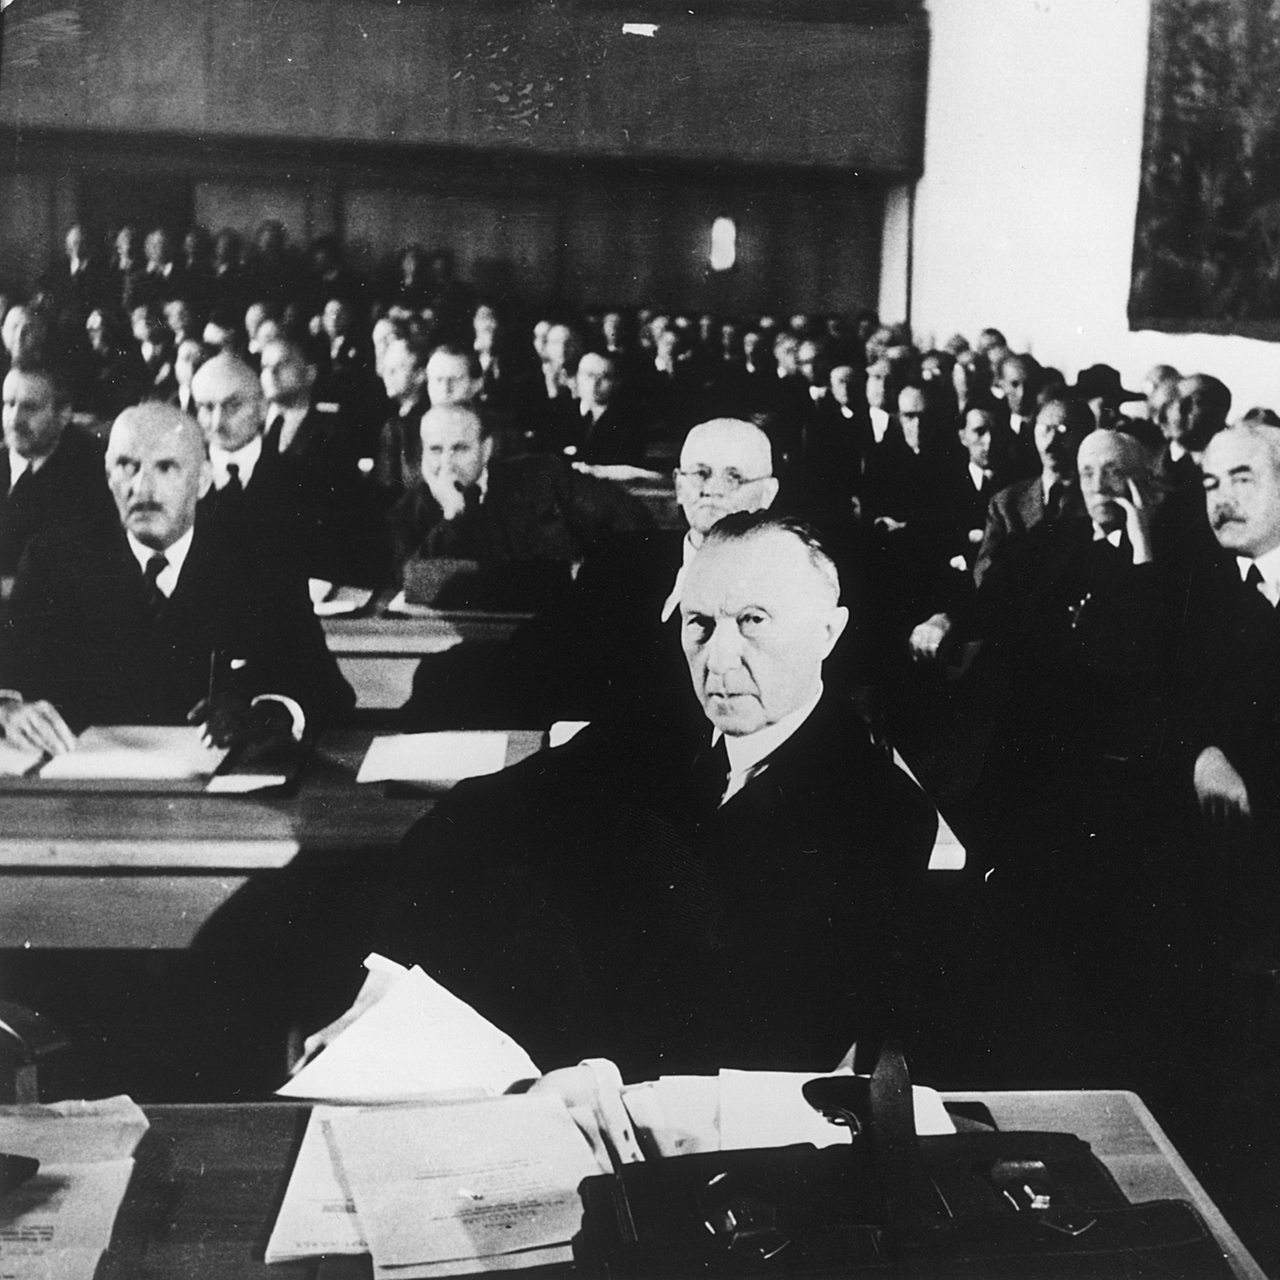 Konstituierende Sitzung des parlamentarischen Rates 1948. Vorne Konrad Adenauer als Vorsitzender